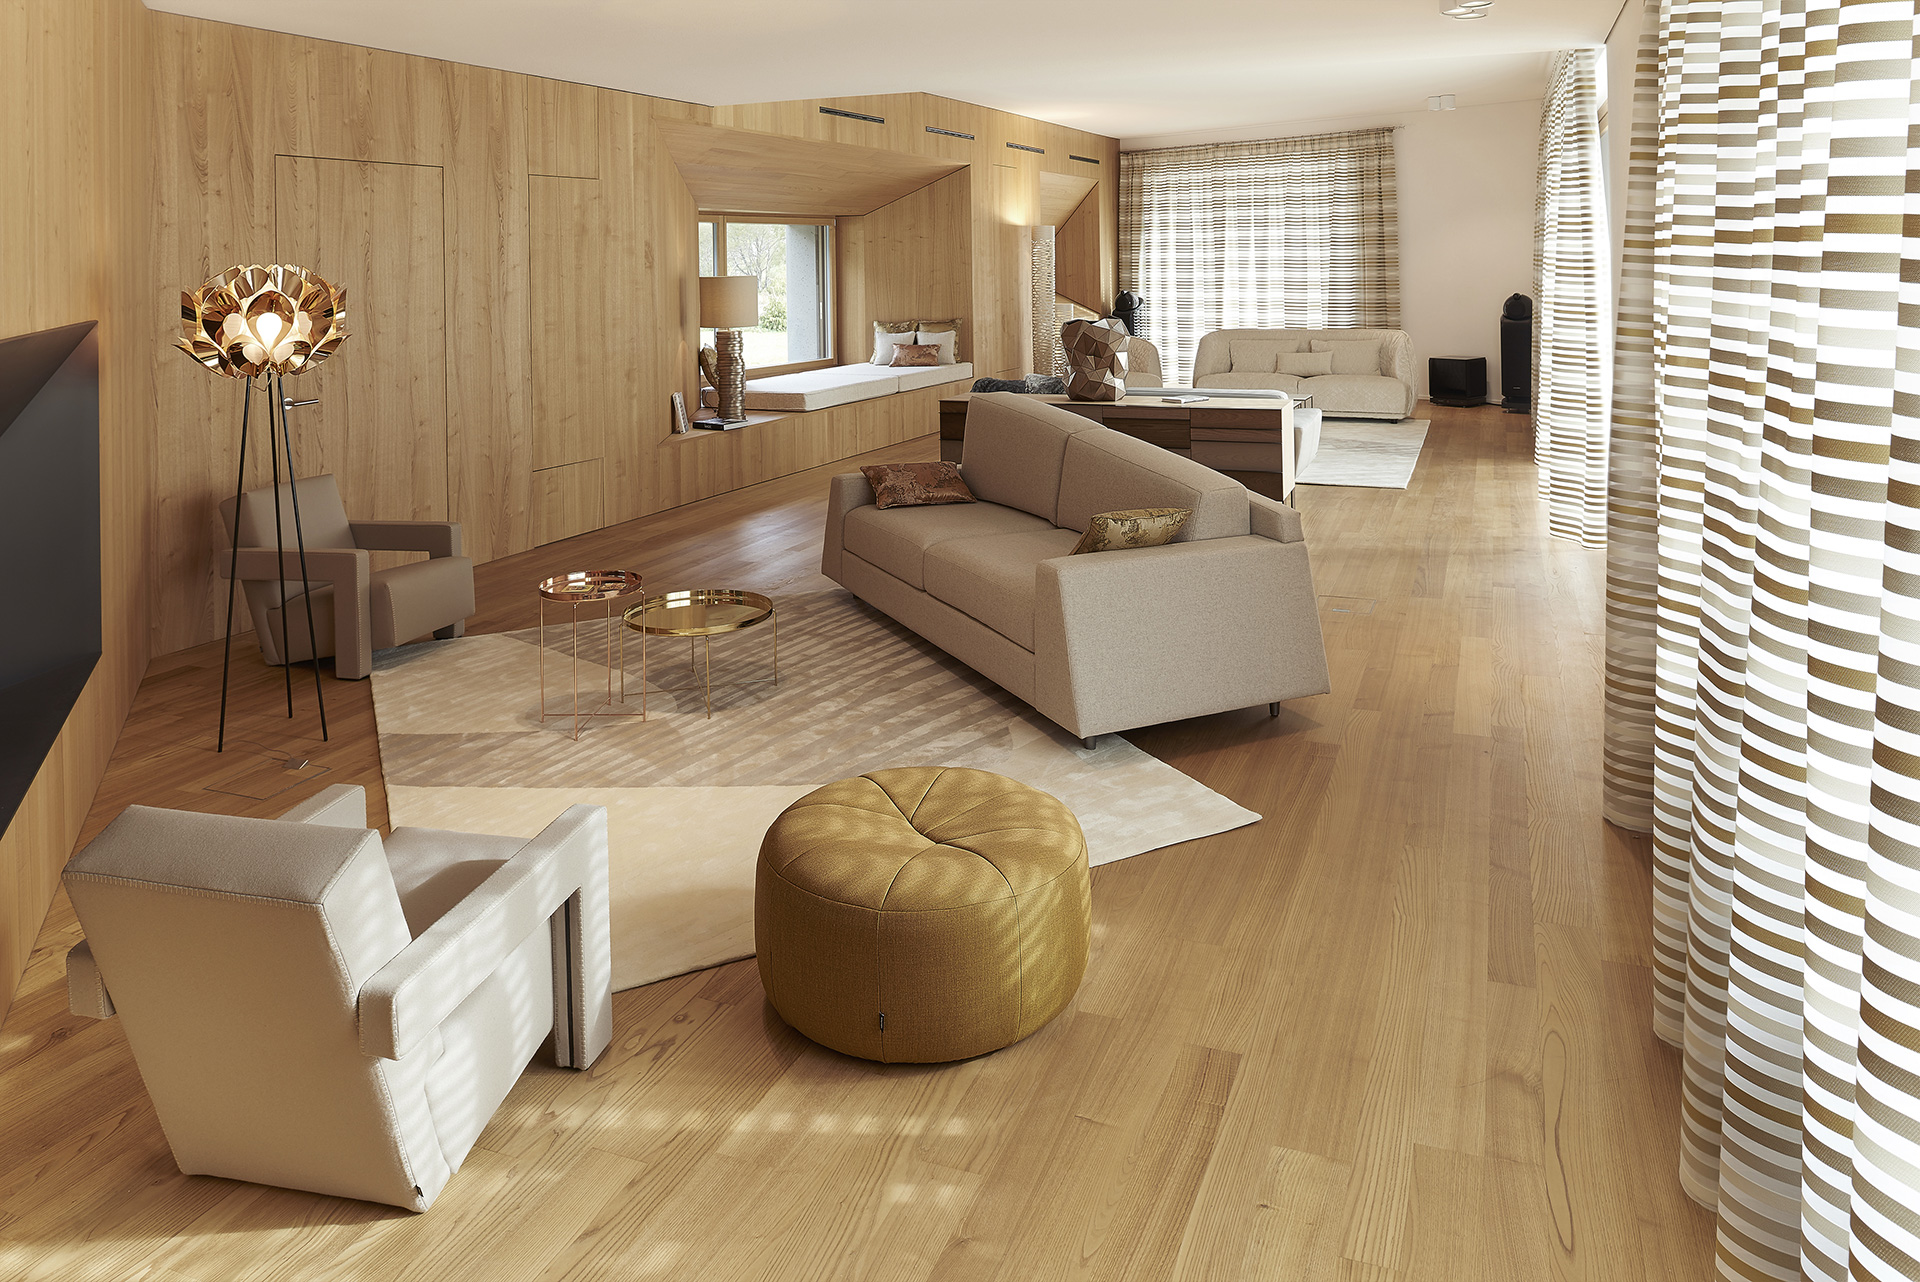 Double salon d’une villa luxueuse dans les Alpes par l’agence Borella Art Design